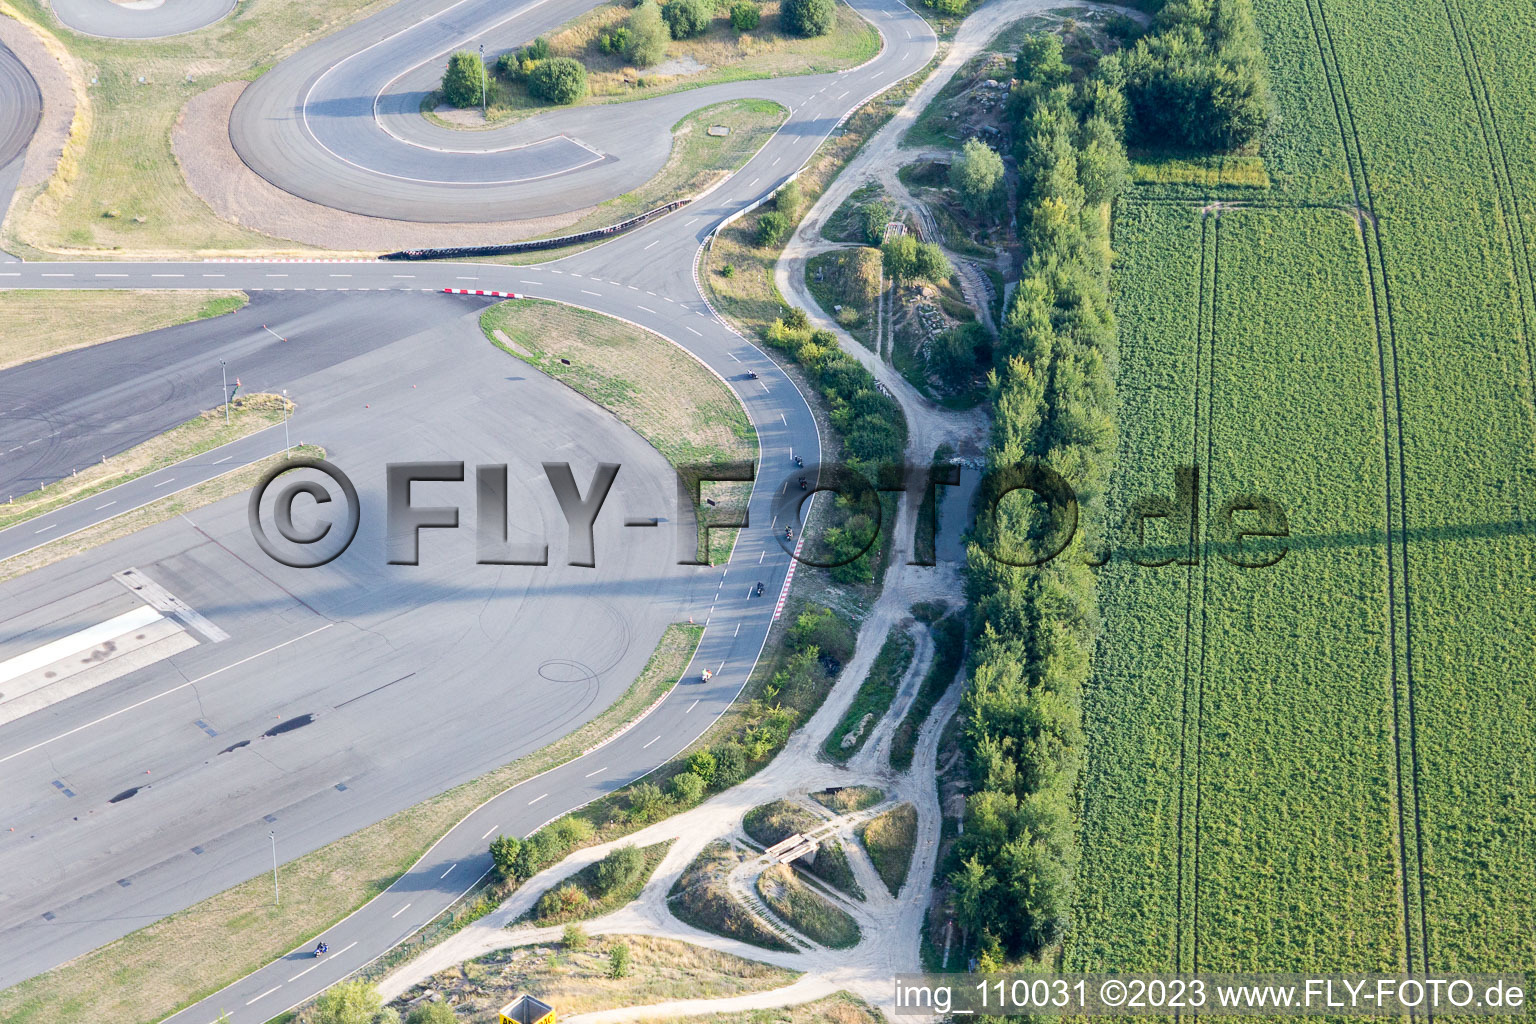 Photographie aérienne de Voies asphaltées du centre de sécurité routière ADAC Hansa devant les décharges de gypse blanc de Gipswerk Embsen GmbH à Embsen dans le département Basse-Saxe, Allemagne